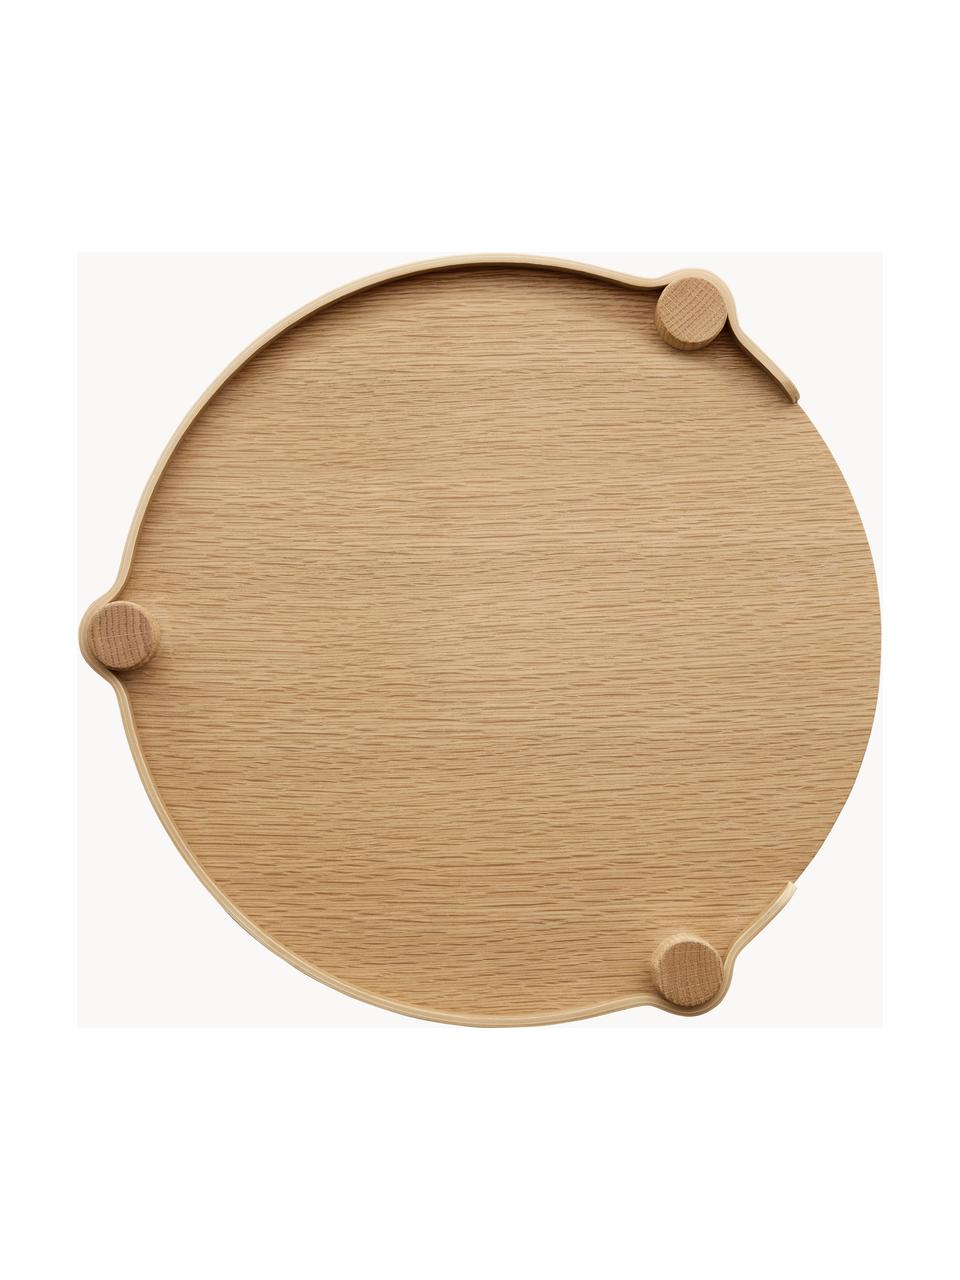 Table d'appoint ronde en chêne Woody, Bois de chêne

Ce produit est fabriqué à partir de bois certifié FSC® issu d'une exploitation durable, Bois de chêne, Ø 45 x haut. 44 cm